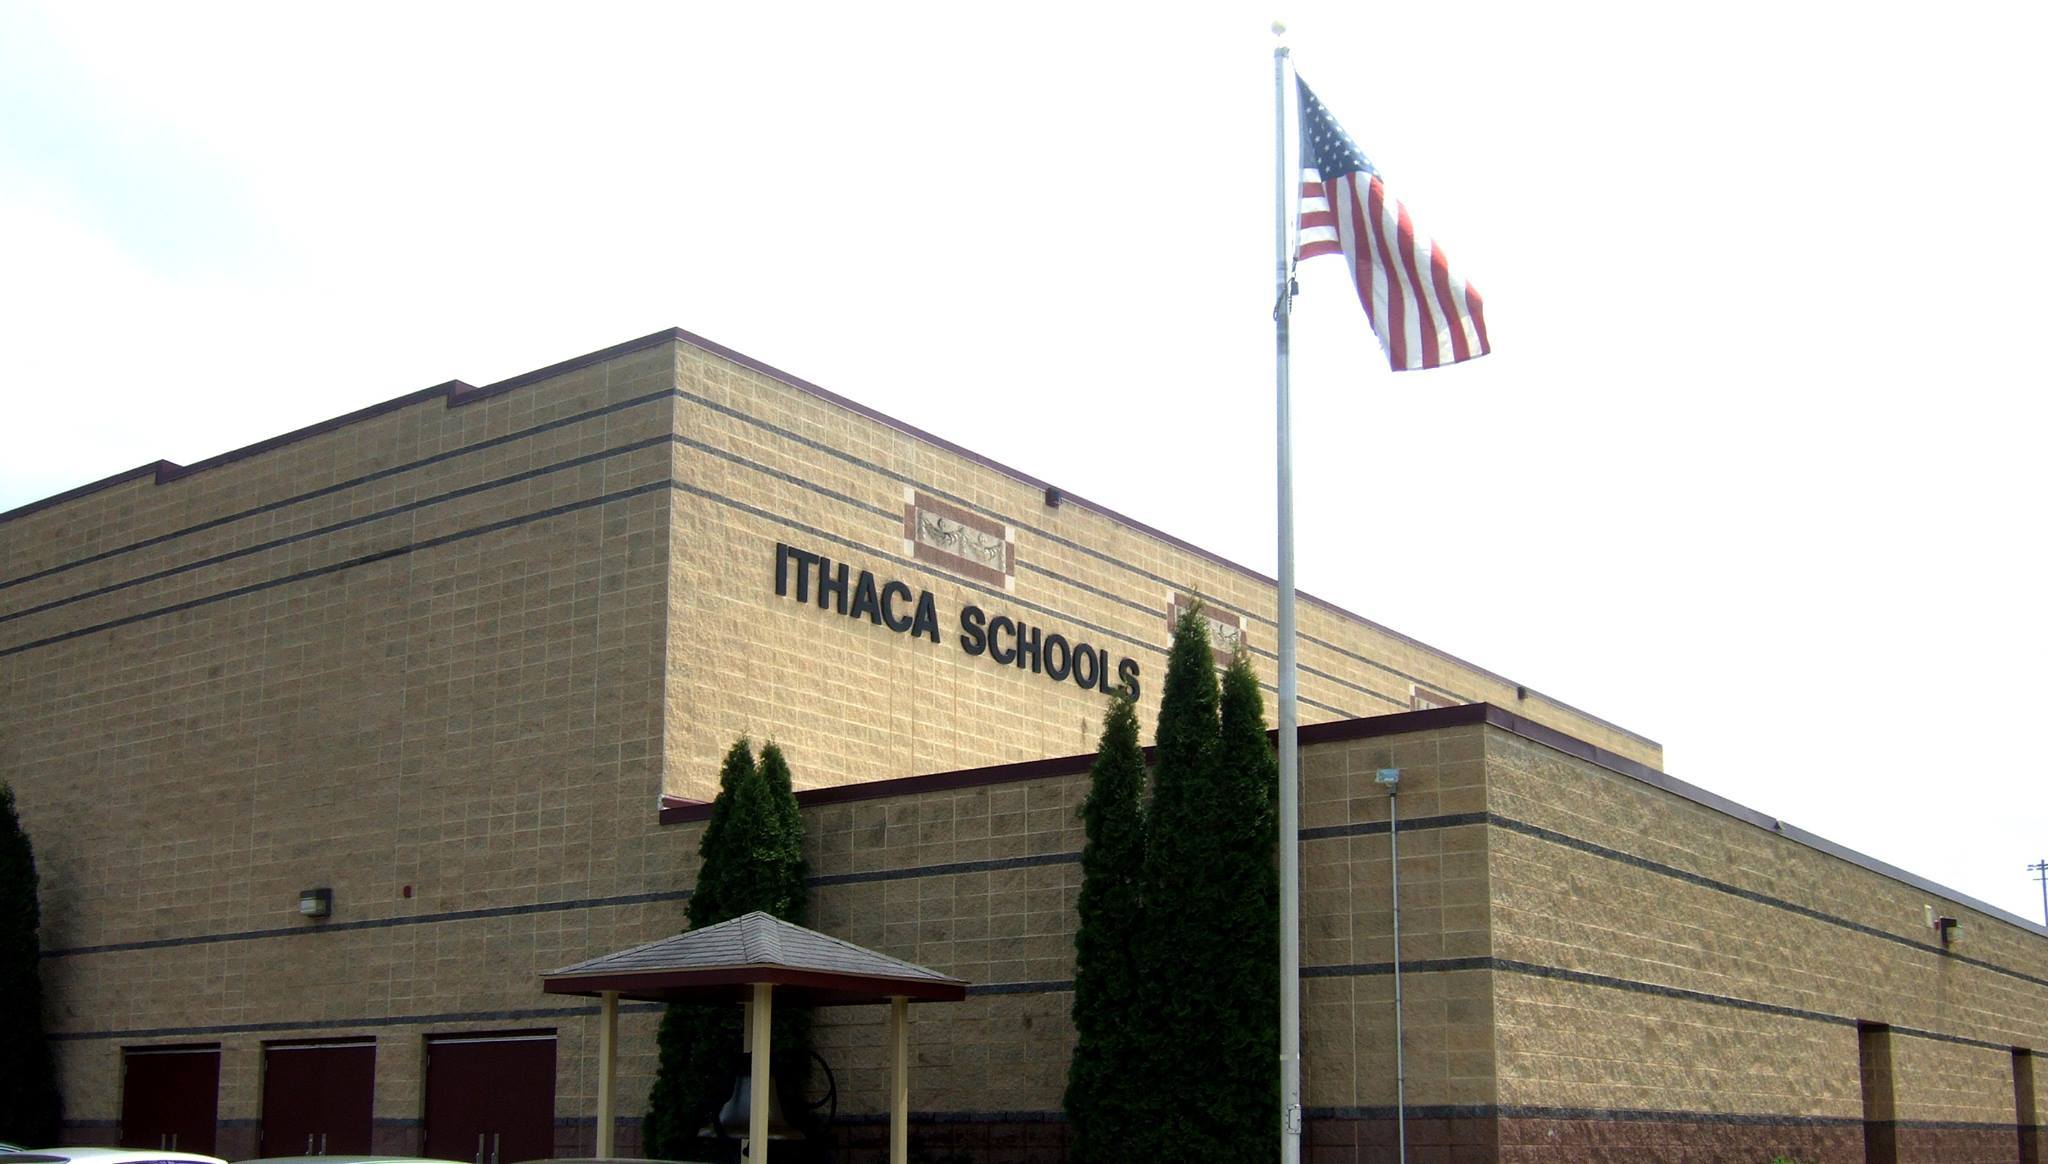 ithaca-school-district